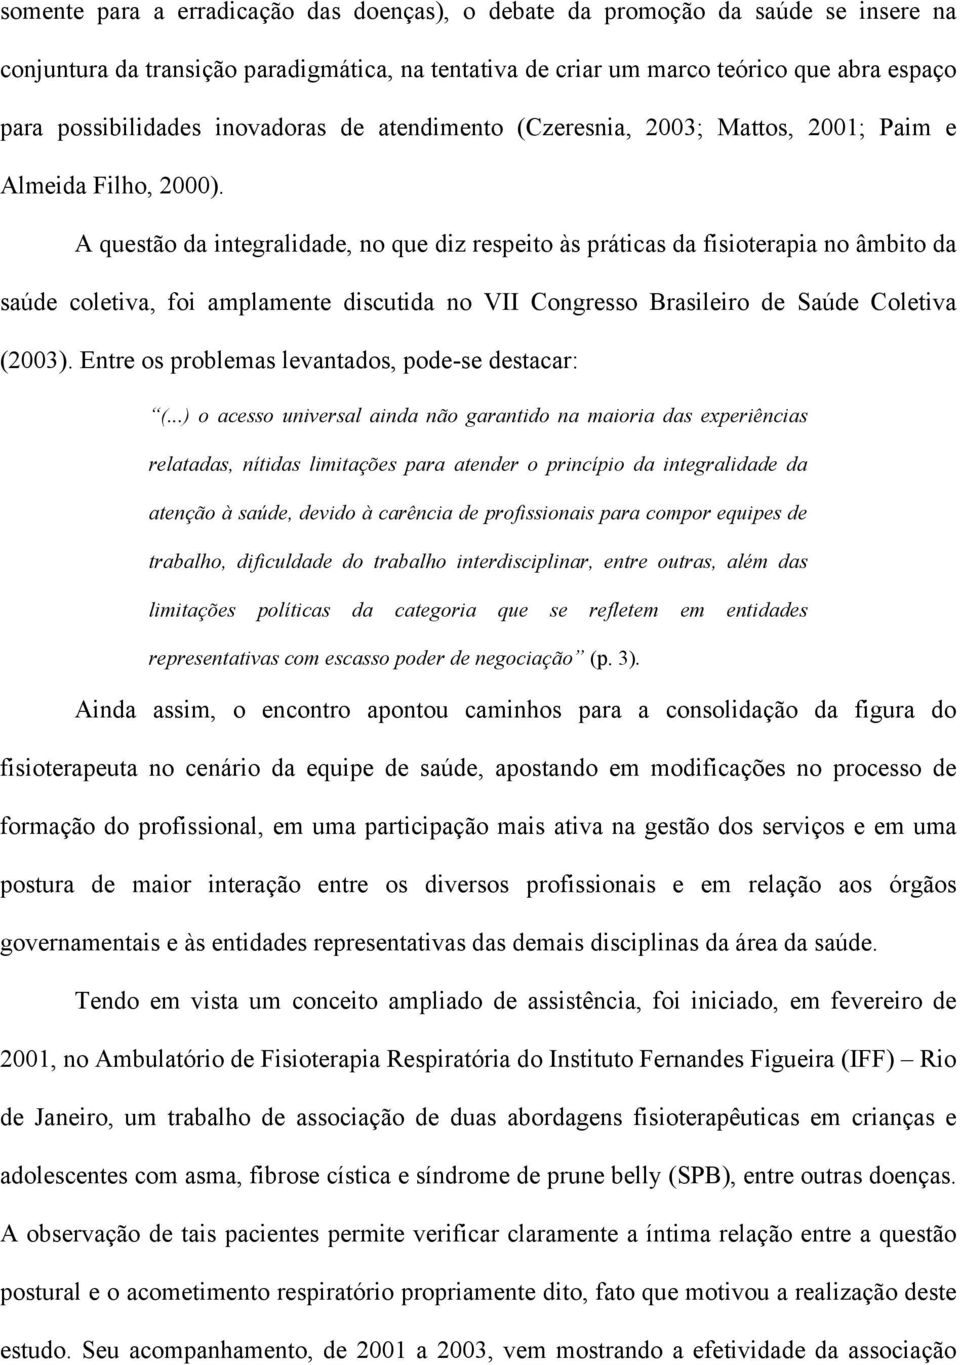 A questão da integralidade, no que diz respeito às práticas da fisioterapia no âmbito da saúde coletiva, foi amplamente discutida no VII Congresso Brasileiro de Saúde Coletiva (2003).